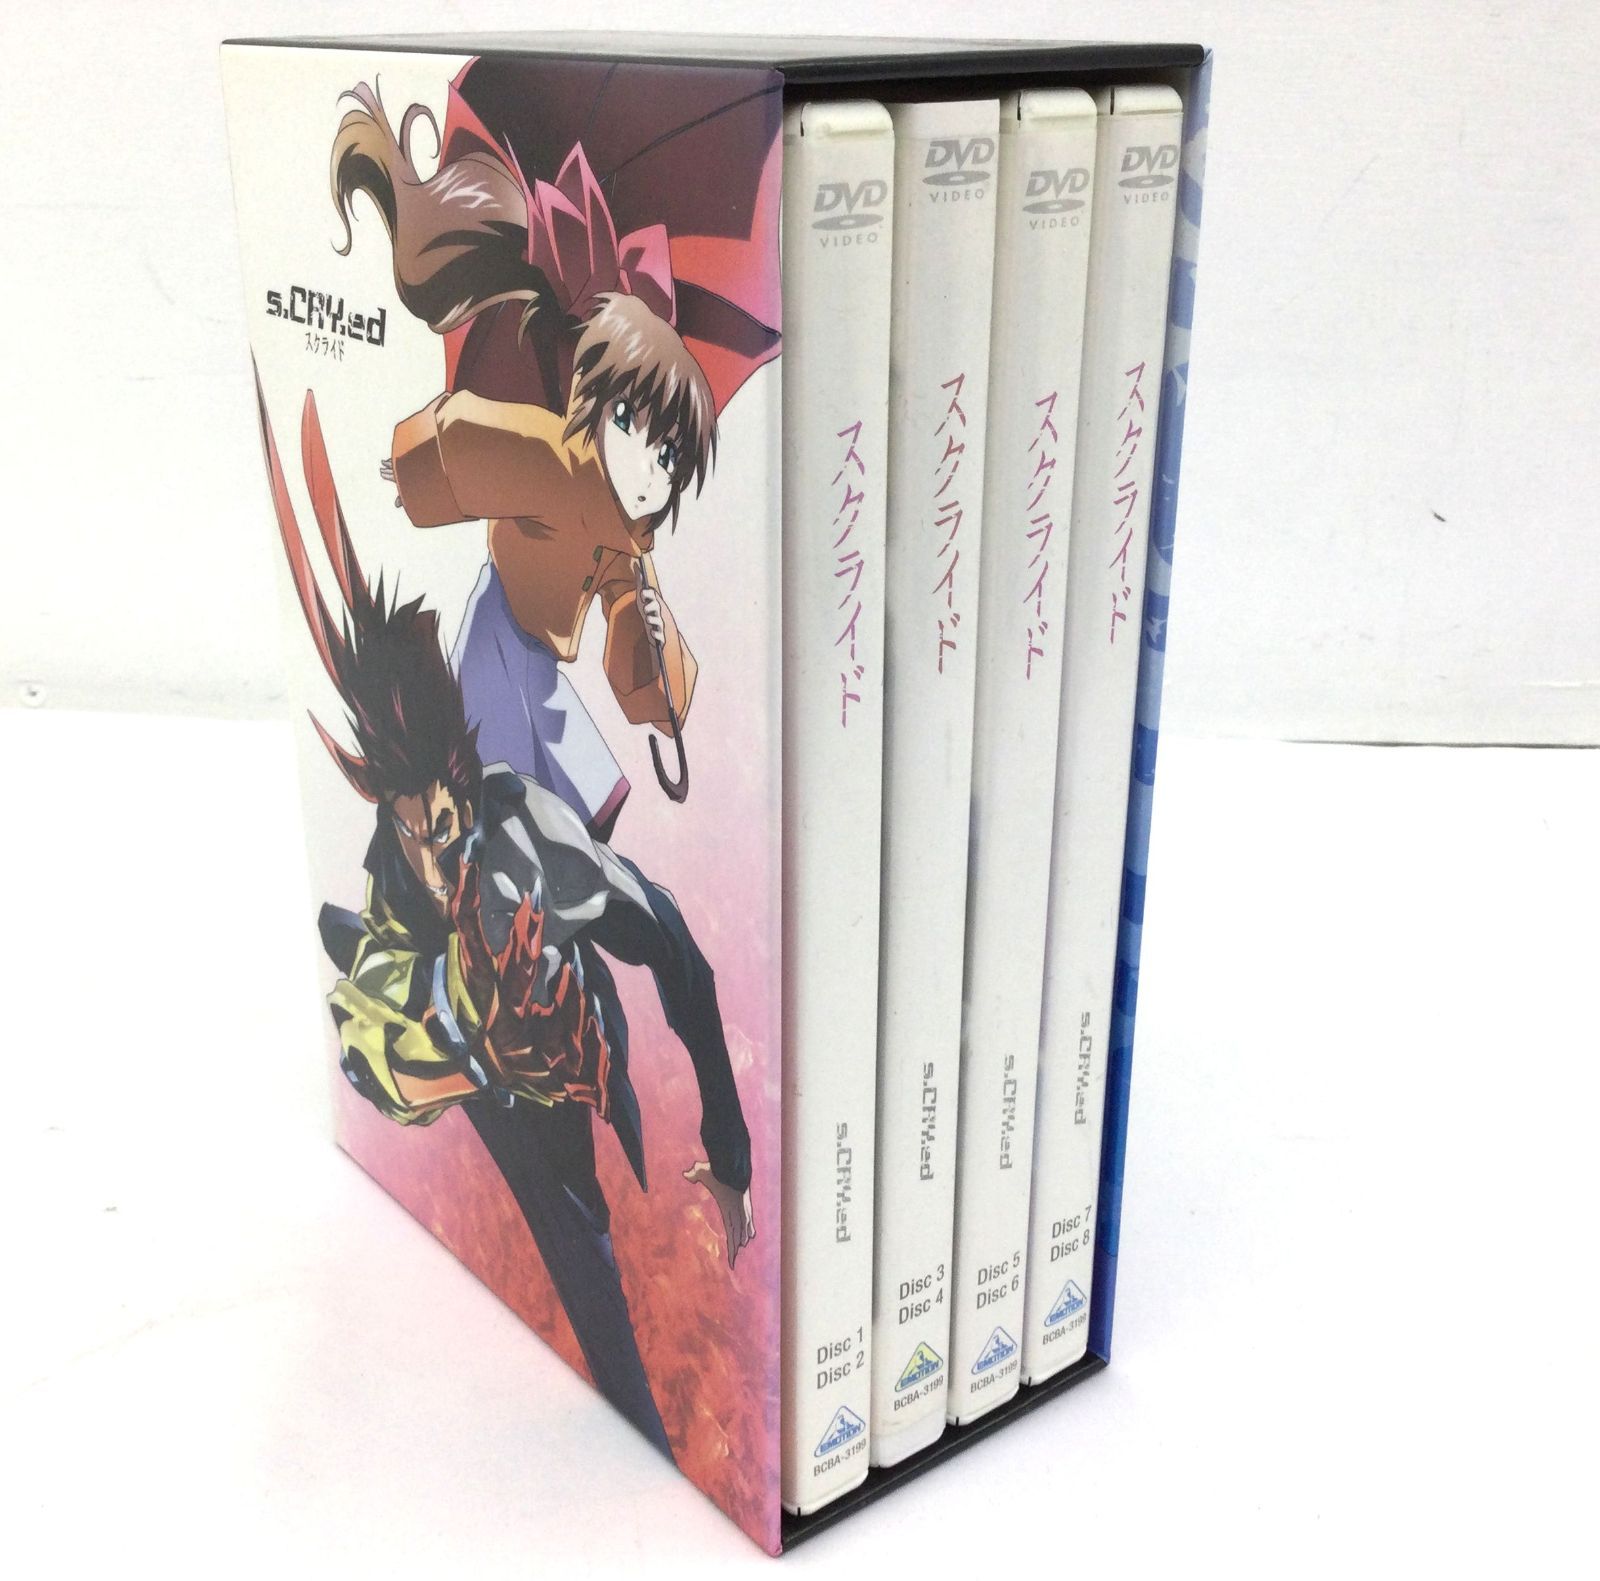 保存版 スクライド DVD-BOX〈7枚組〉 中古DVD・ブルーレイ DVD